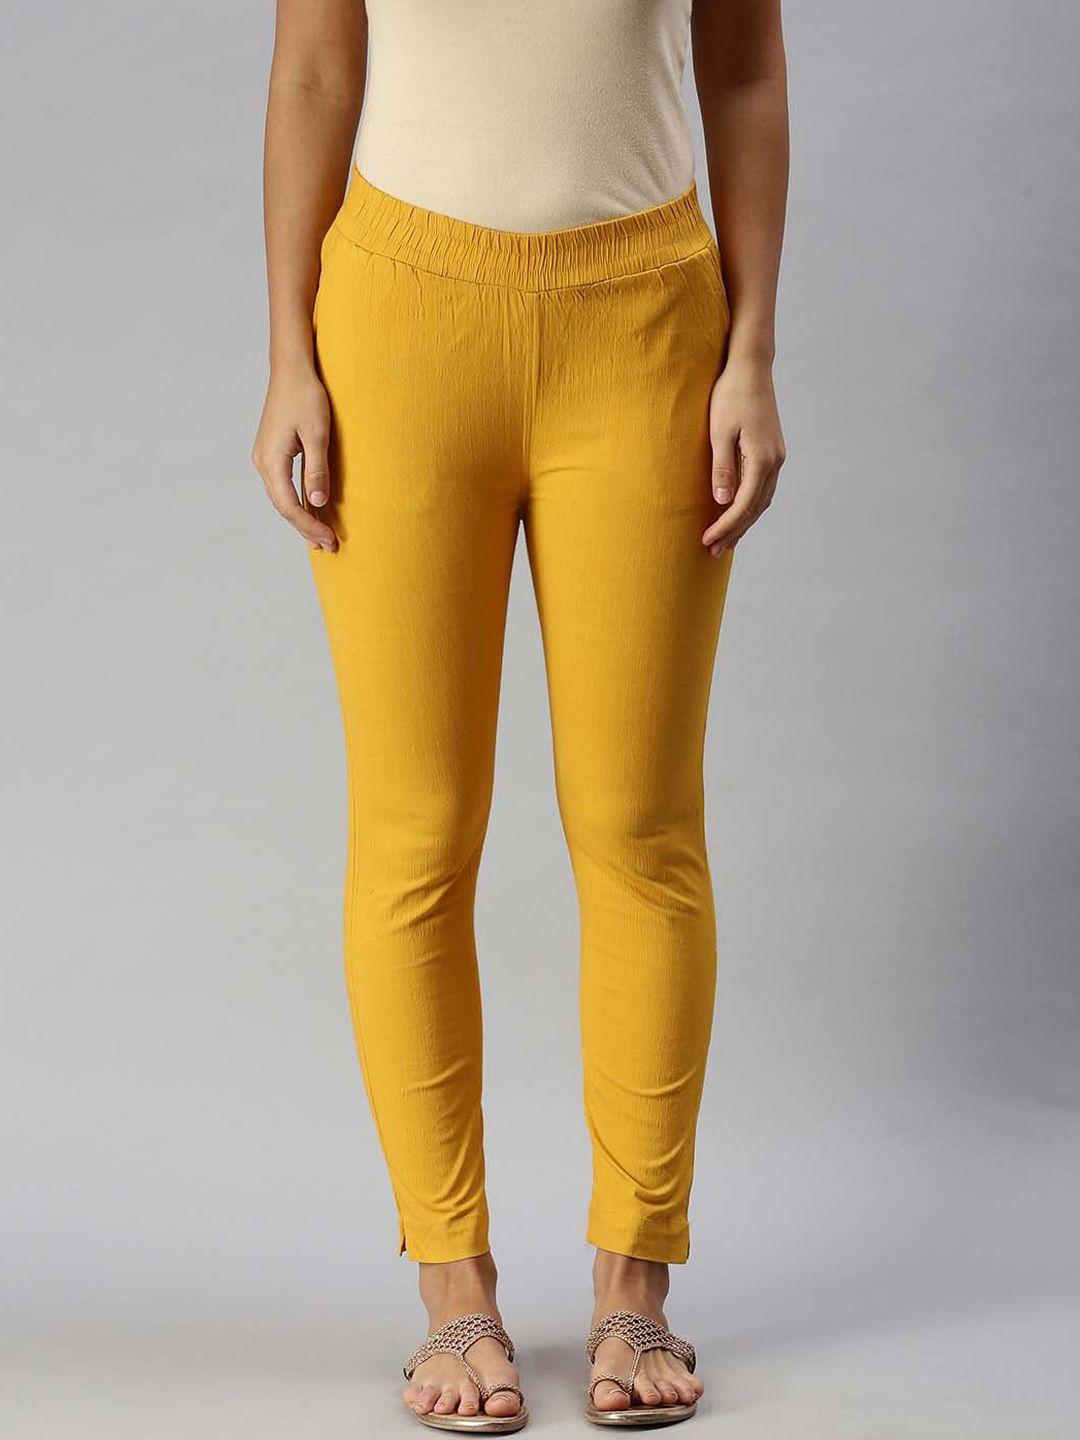 soch women yellow cigarette trousers